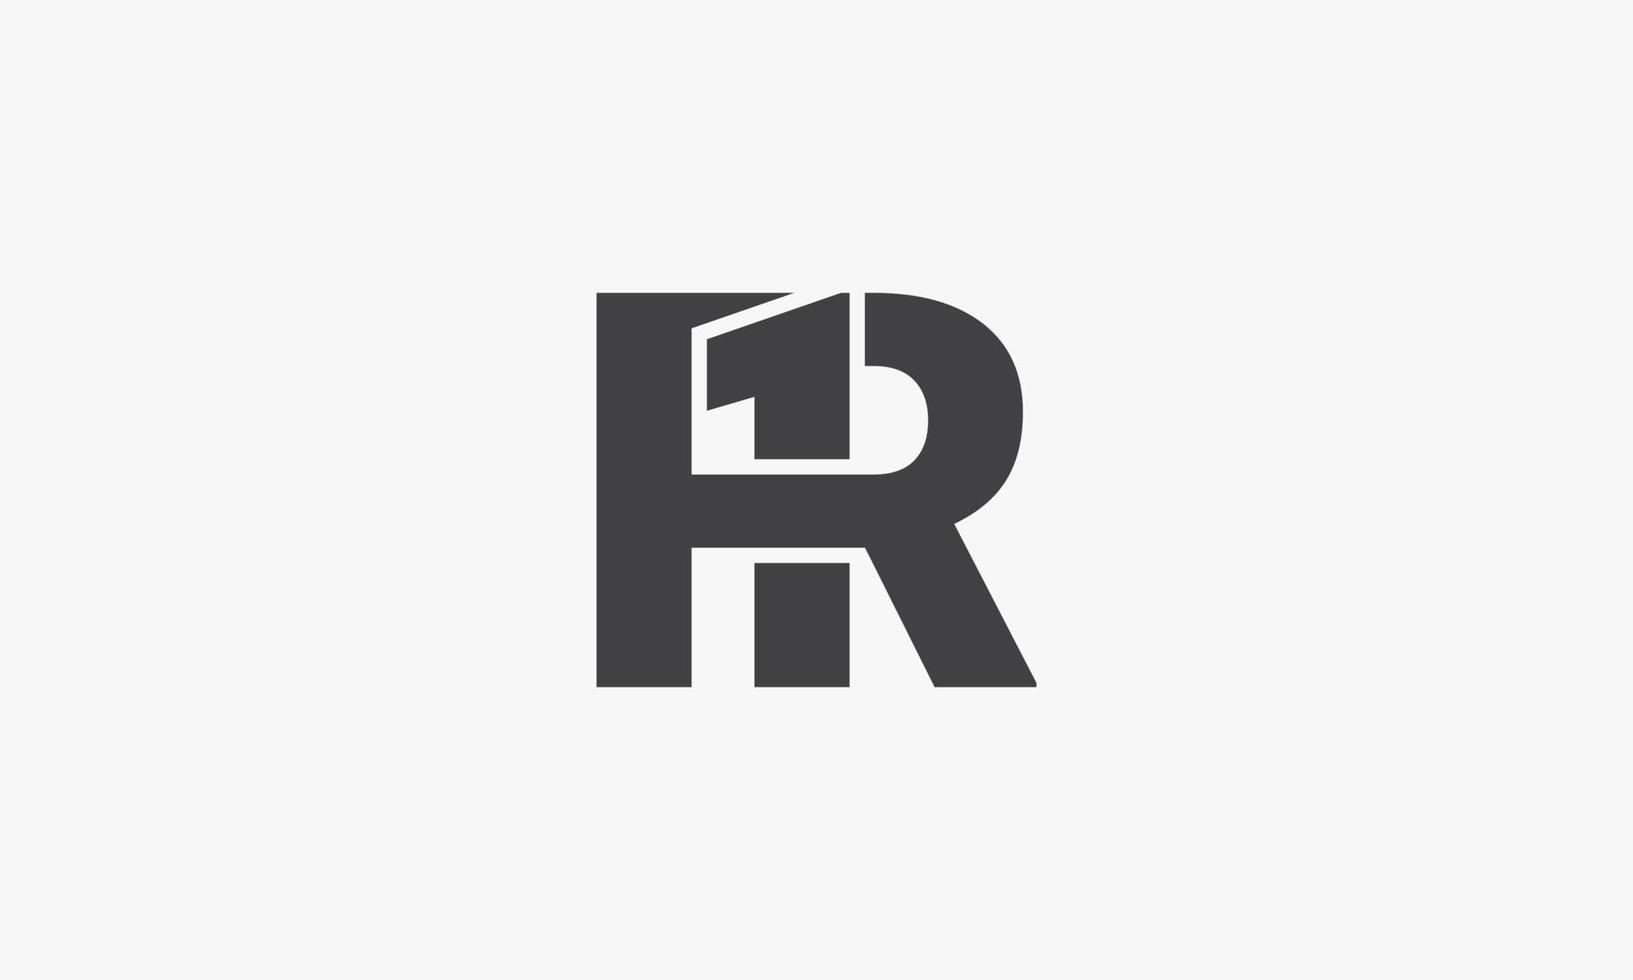 r1 o 1r lettera logo concetto isolato su sfondo bianco. vettore